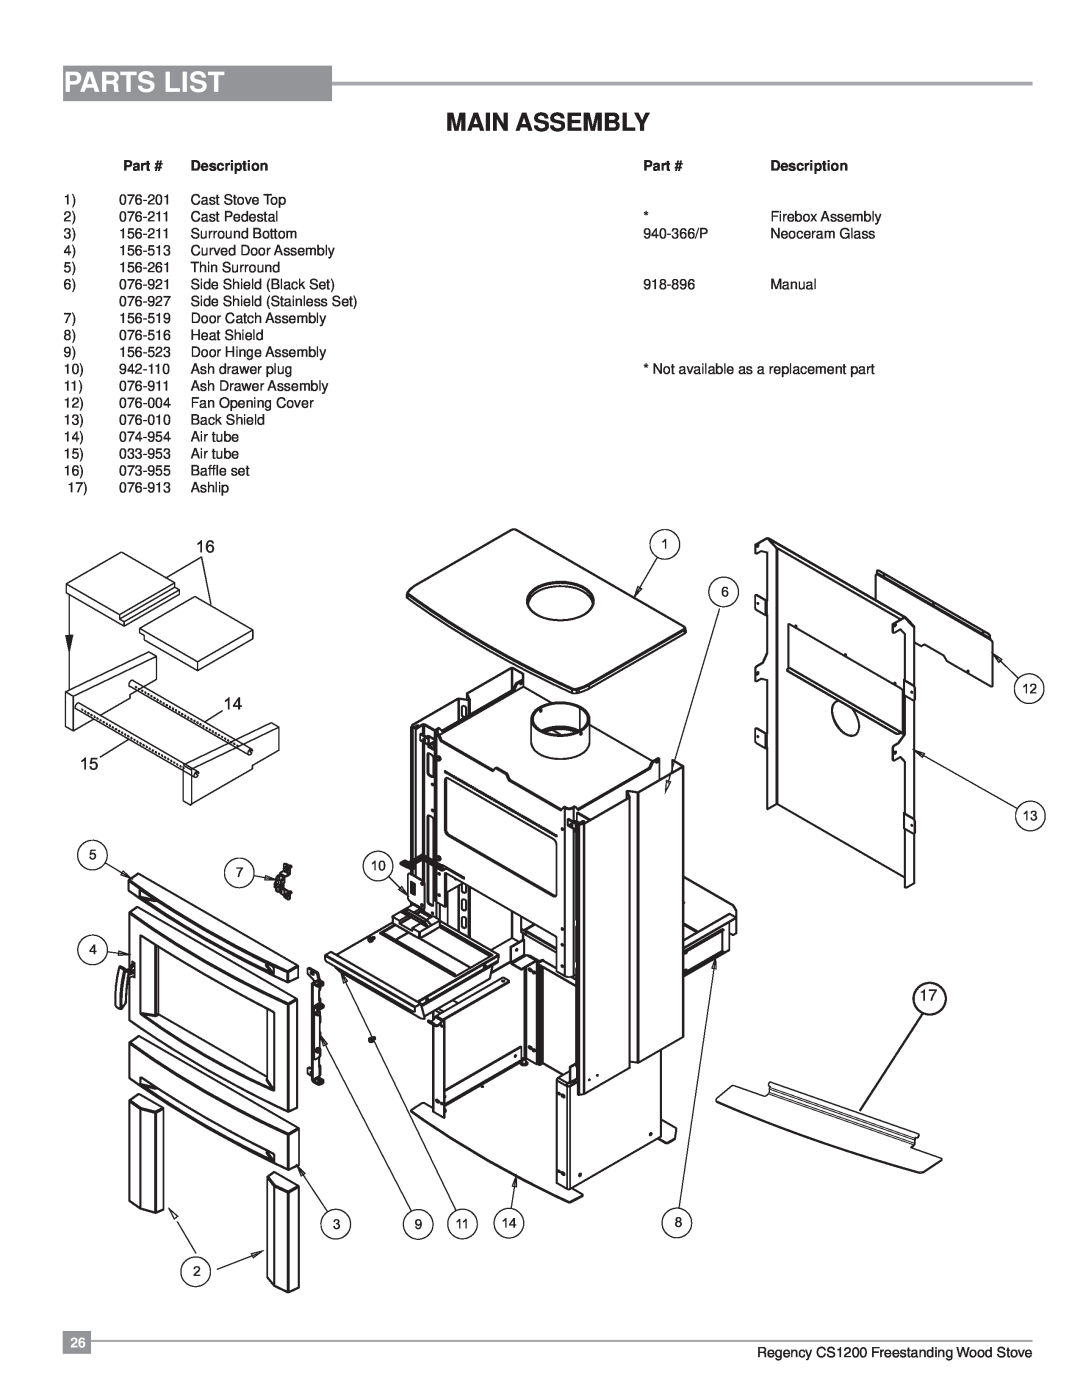 Regency CS1200 installation manual Parts List, Main Assembly, Description 